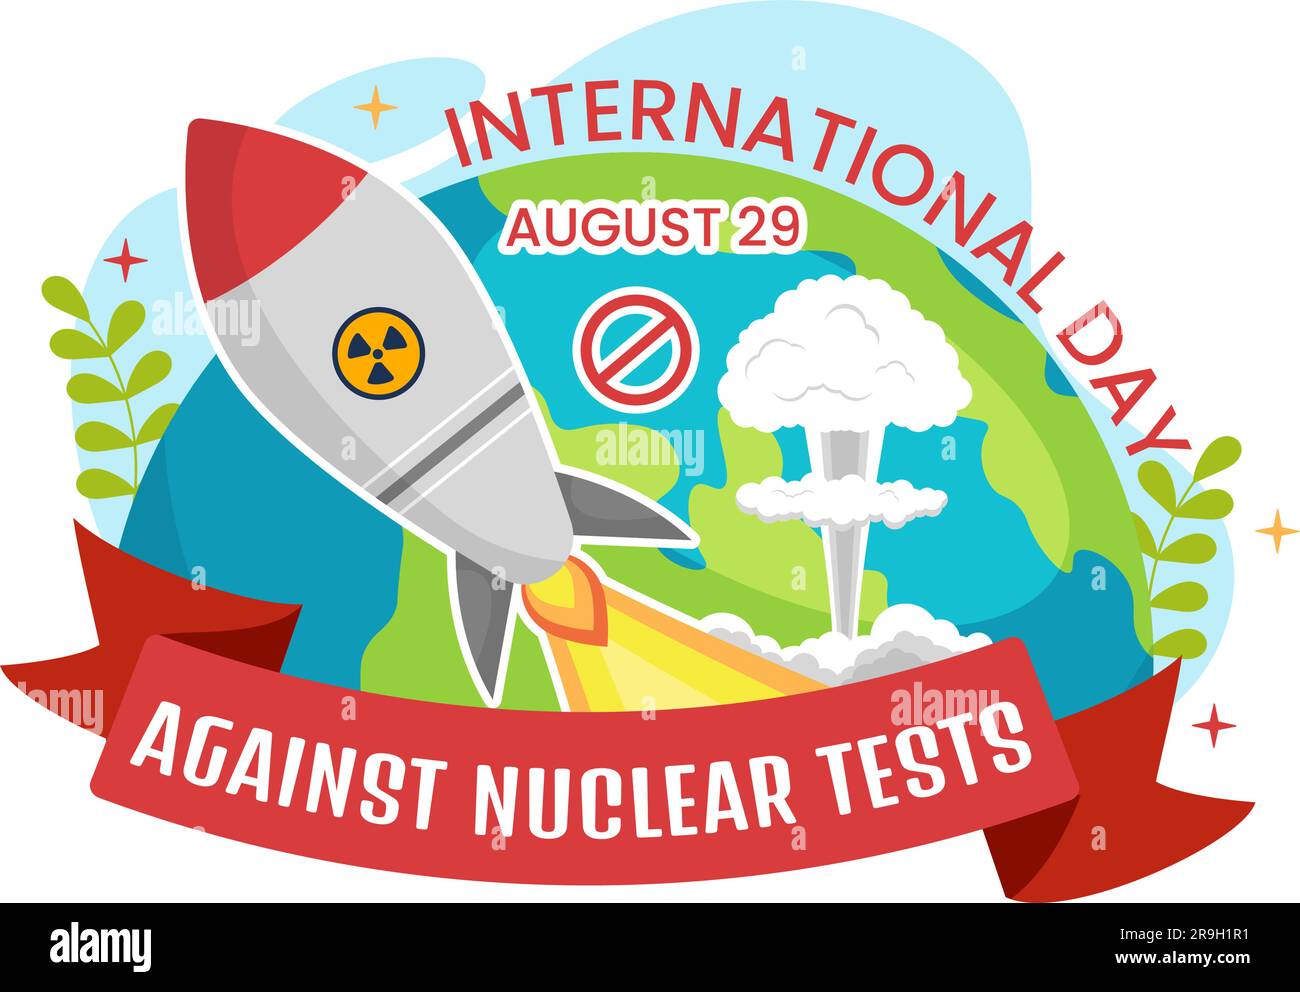 Internationaler Tag gegen Atomtests Vektorabbildung am 29. August mit Ban-Zeichen-Symbol, Erde und Raketenbombe in handgezeichneten Vorlagen Stock Vektor